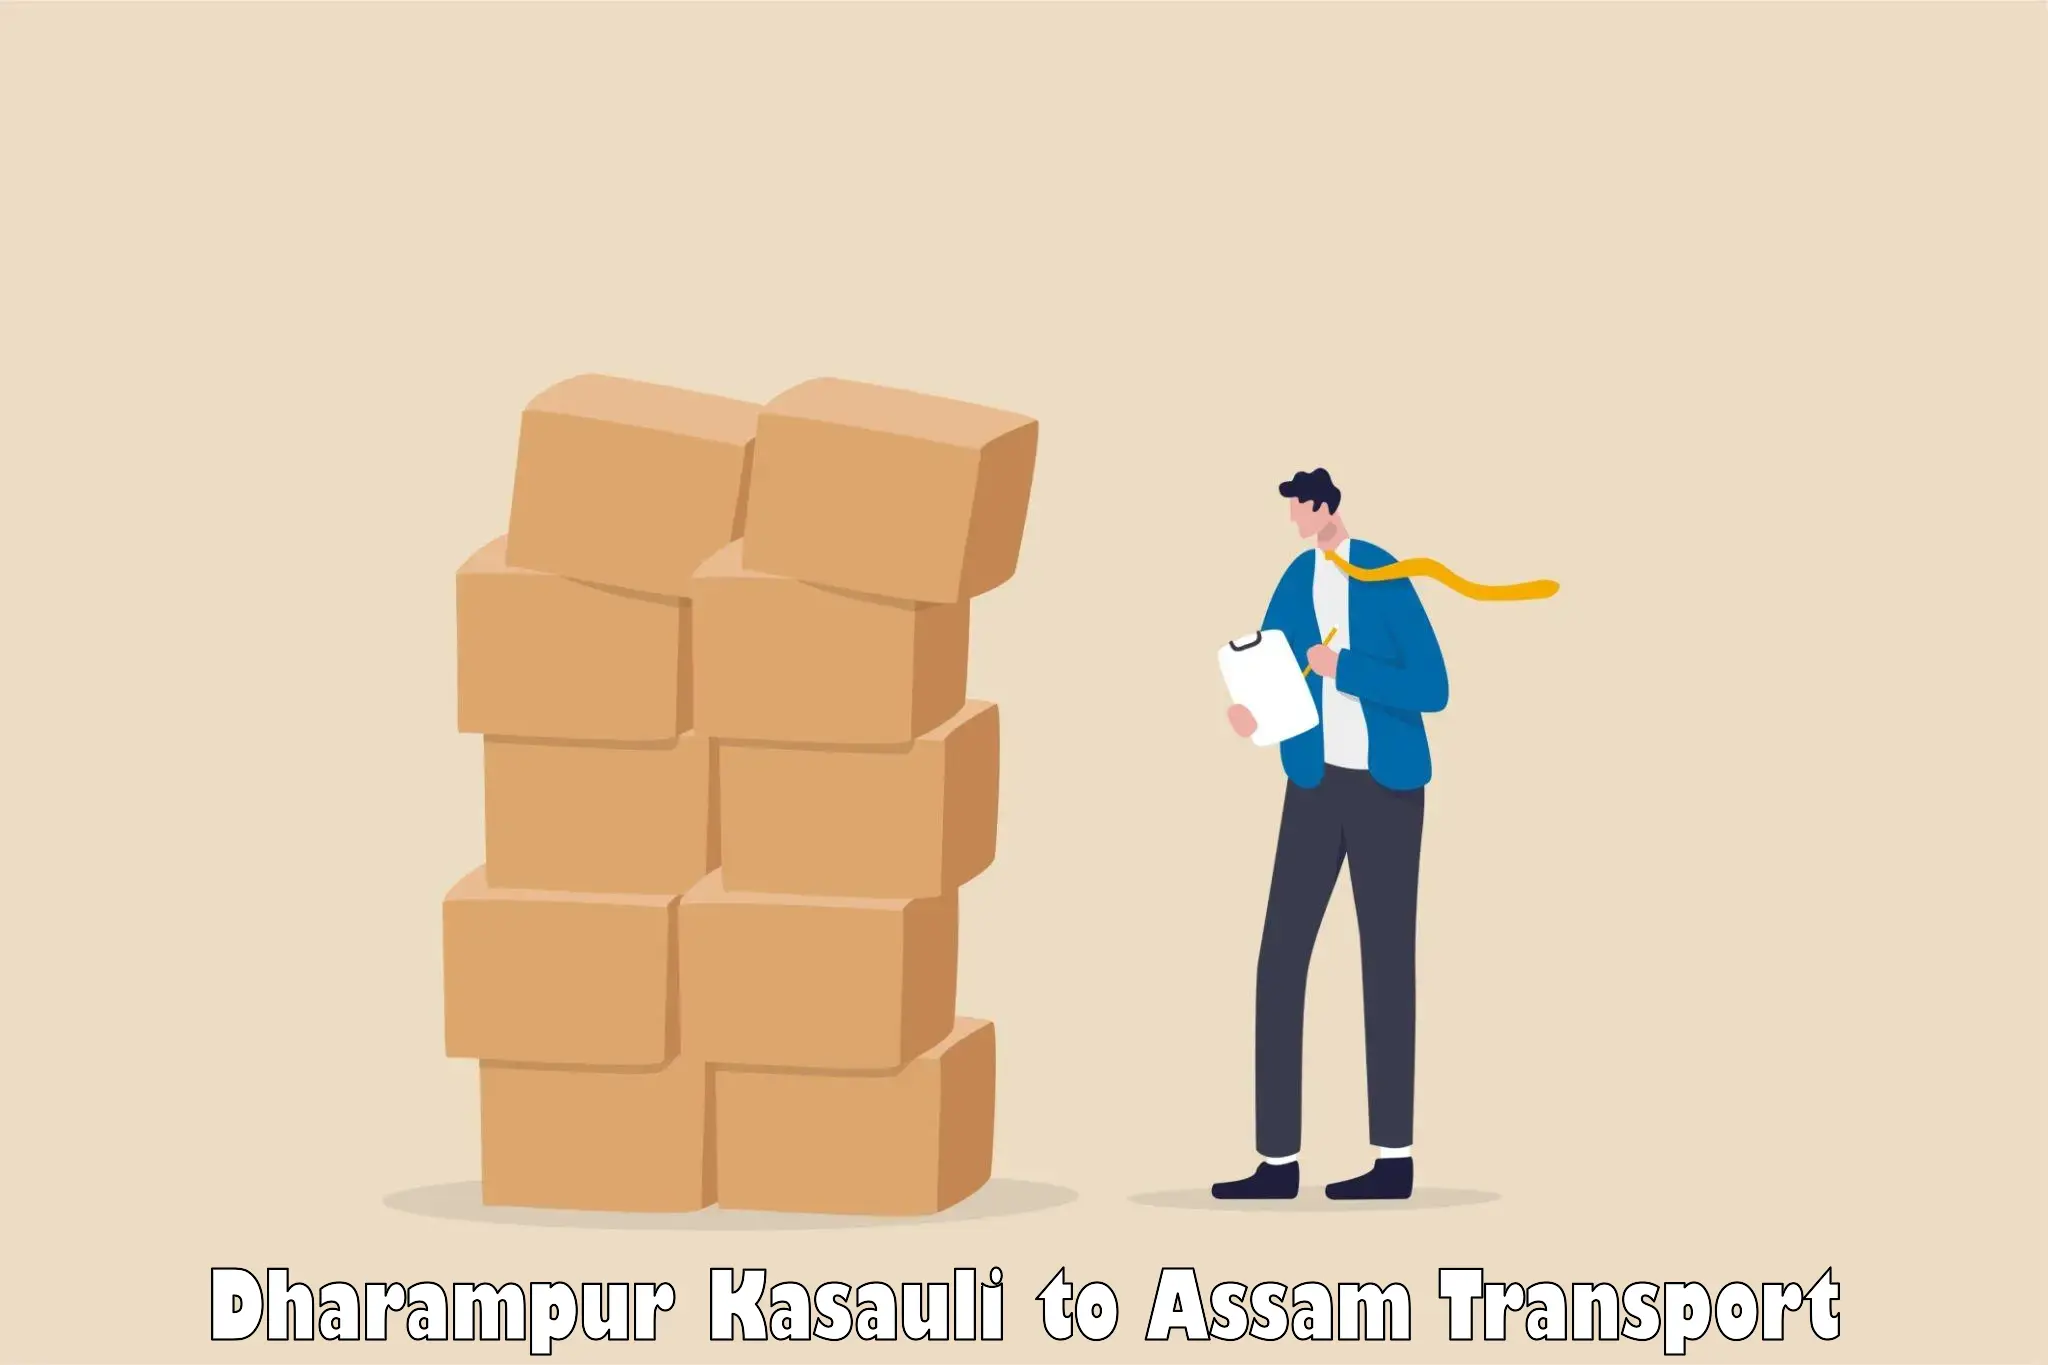 Transport in sharing Dharampur Kasauli to Kalain